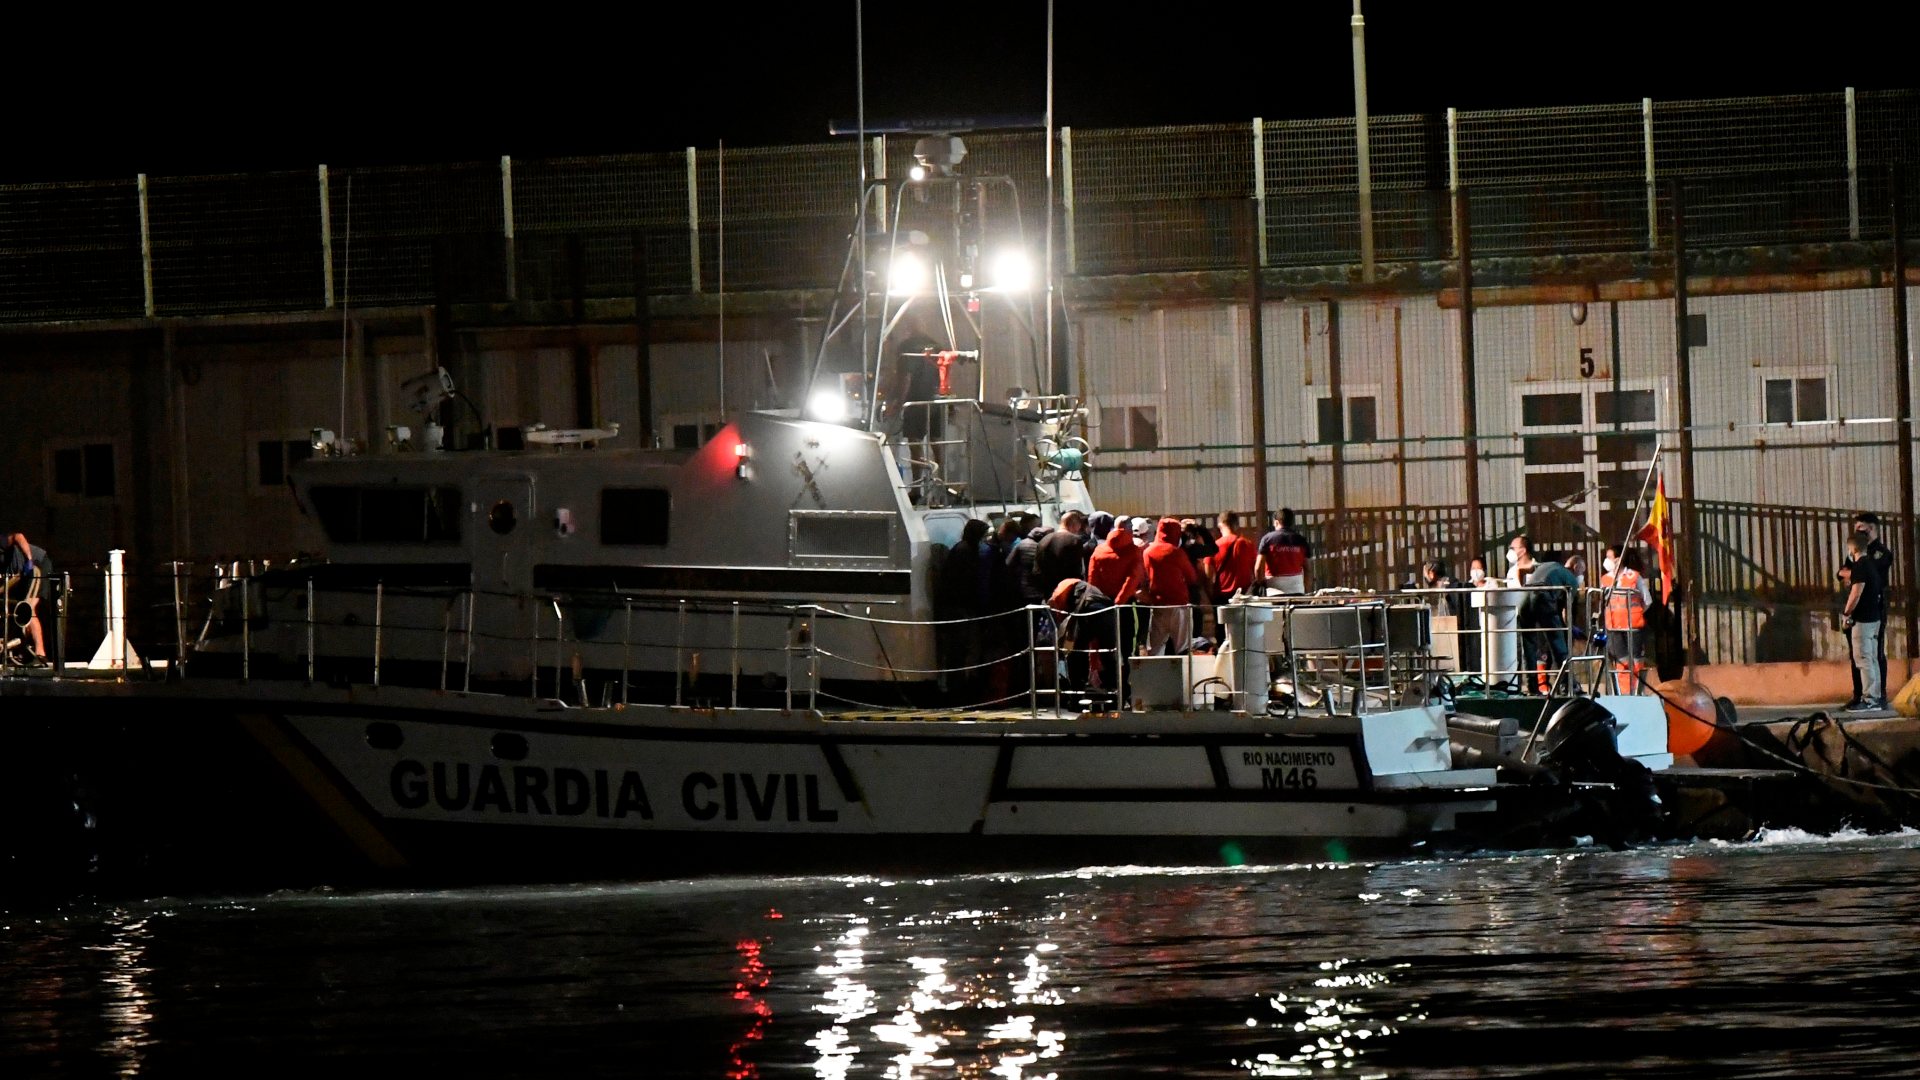 Ir al Video Más de 500 migrantes llegan a las costas españolas en patera este fin de semana